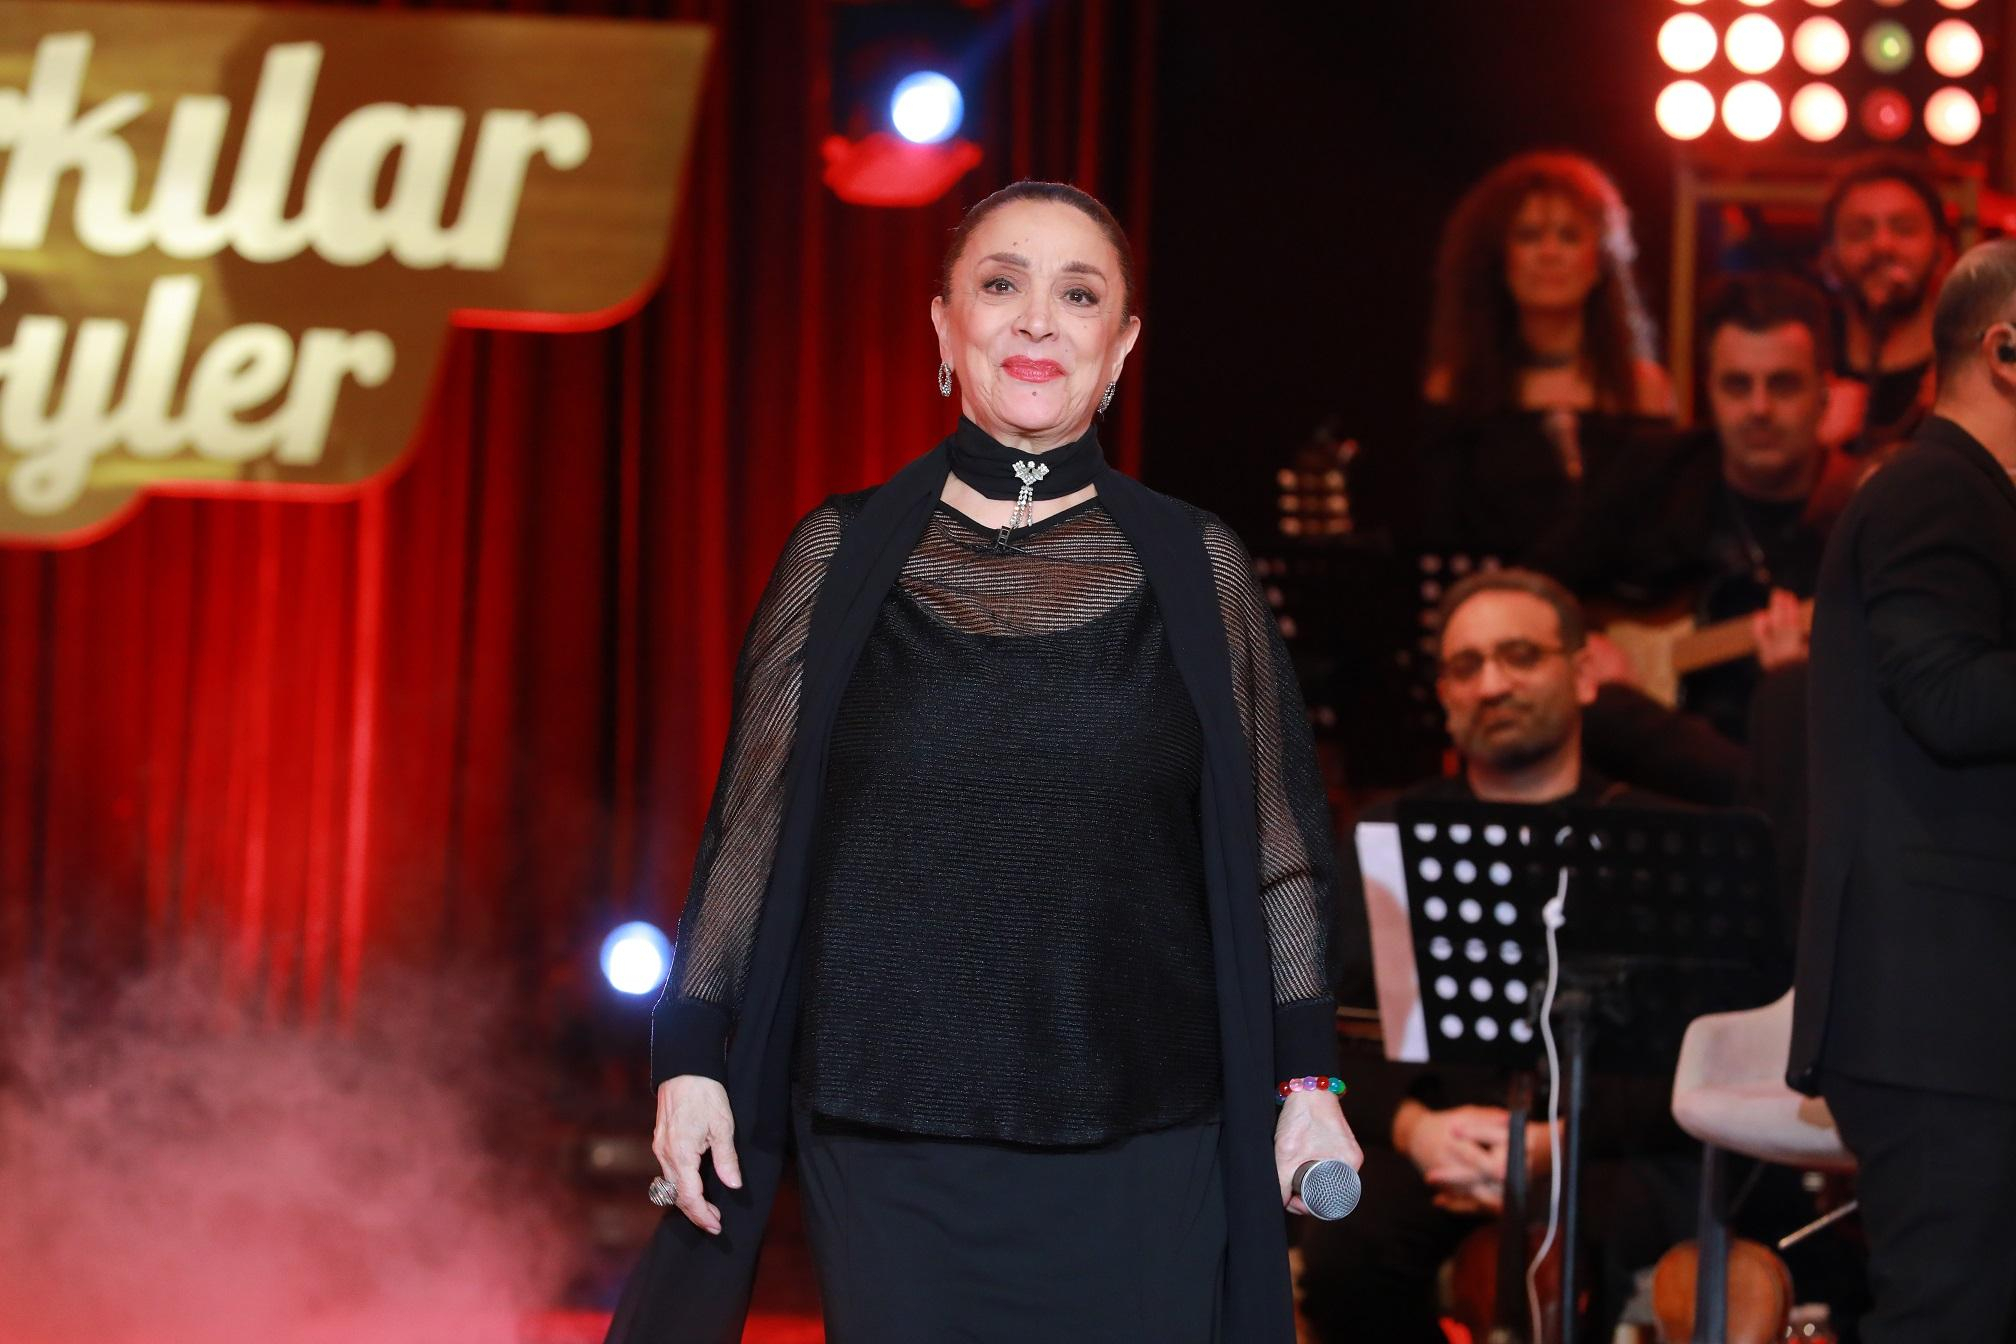 Şarkılar Bizi Söyler’de bu hafta; Türk Halk müziğinin en sevilen türküleri seslendirilecek!